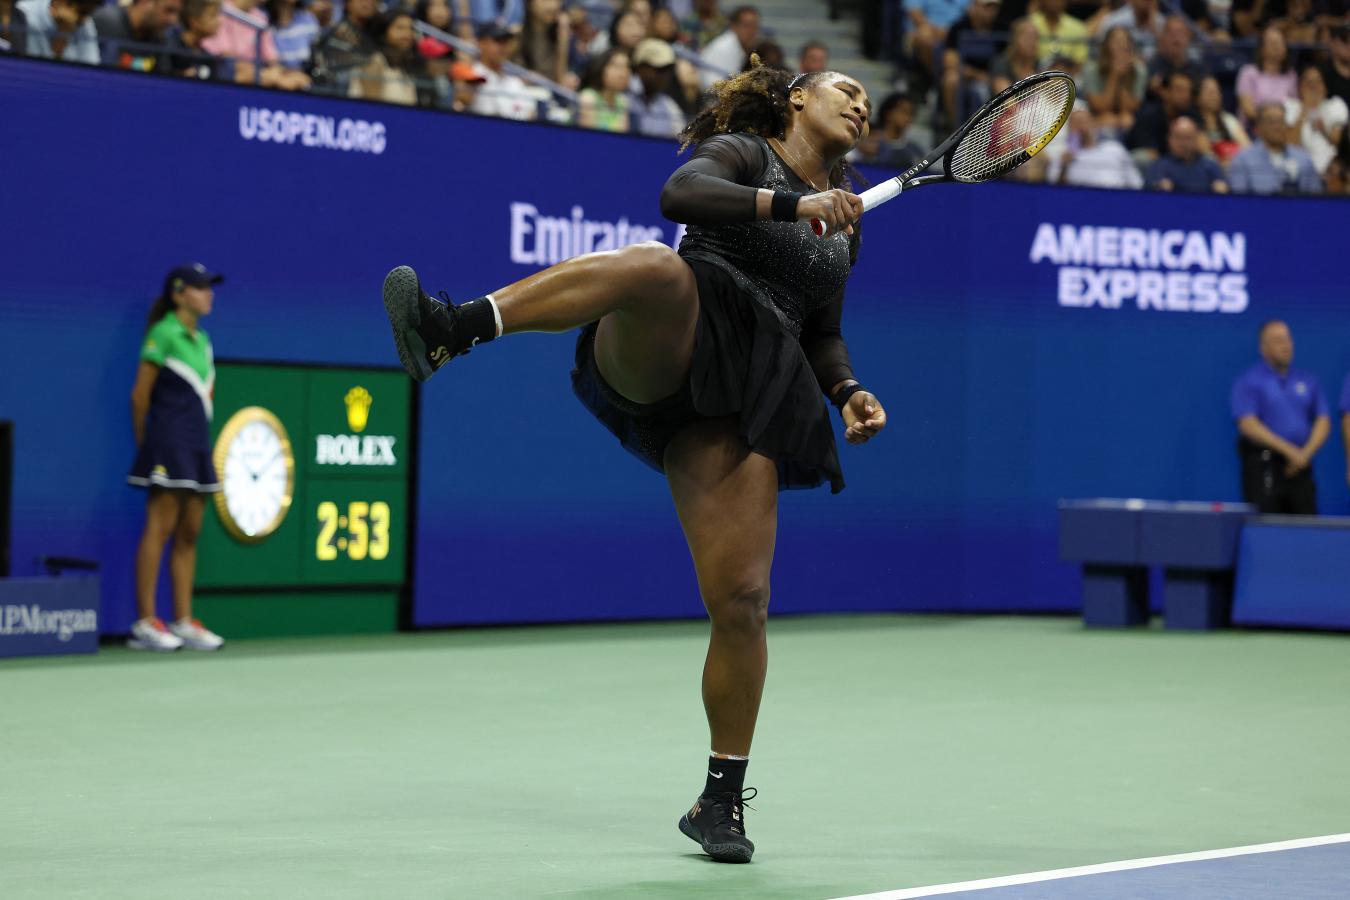 Imagen Serena Williams, dueña de un estilo único y la más influyente en el circuito del siglo (AL BELLO / GETTY IMAGES NORTH AMERICA / Getty Images via AFP)